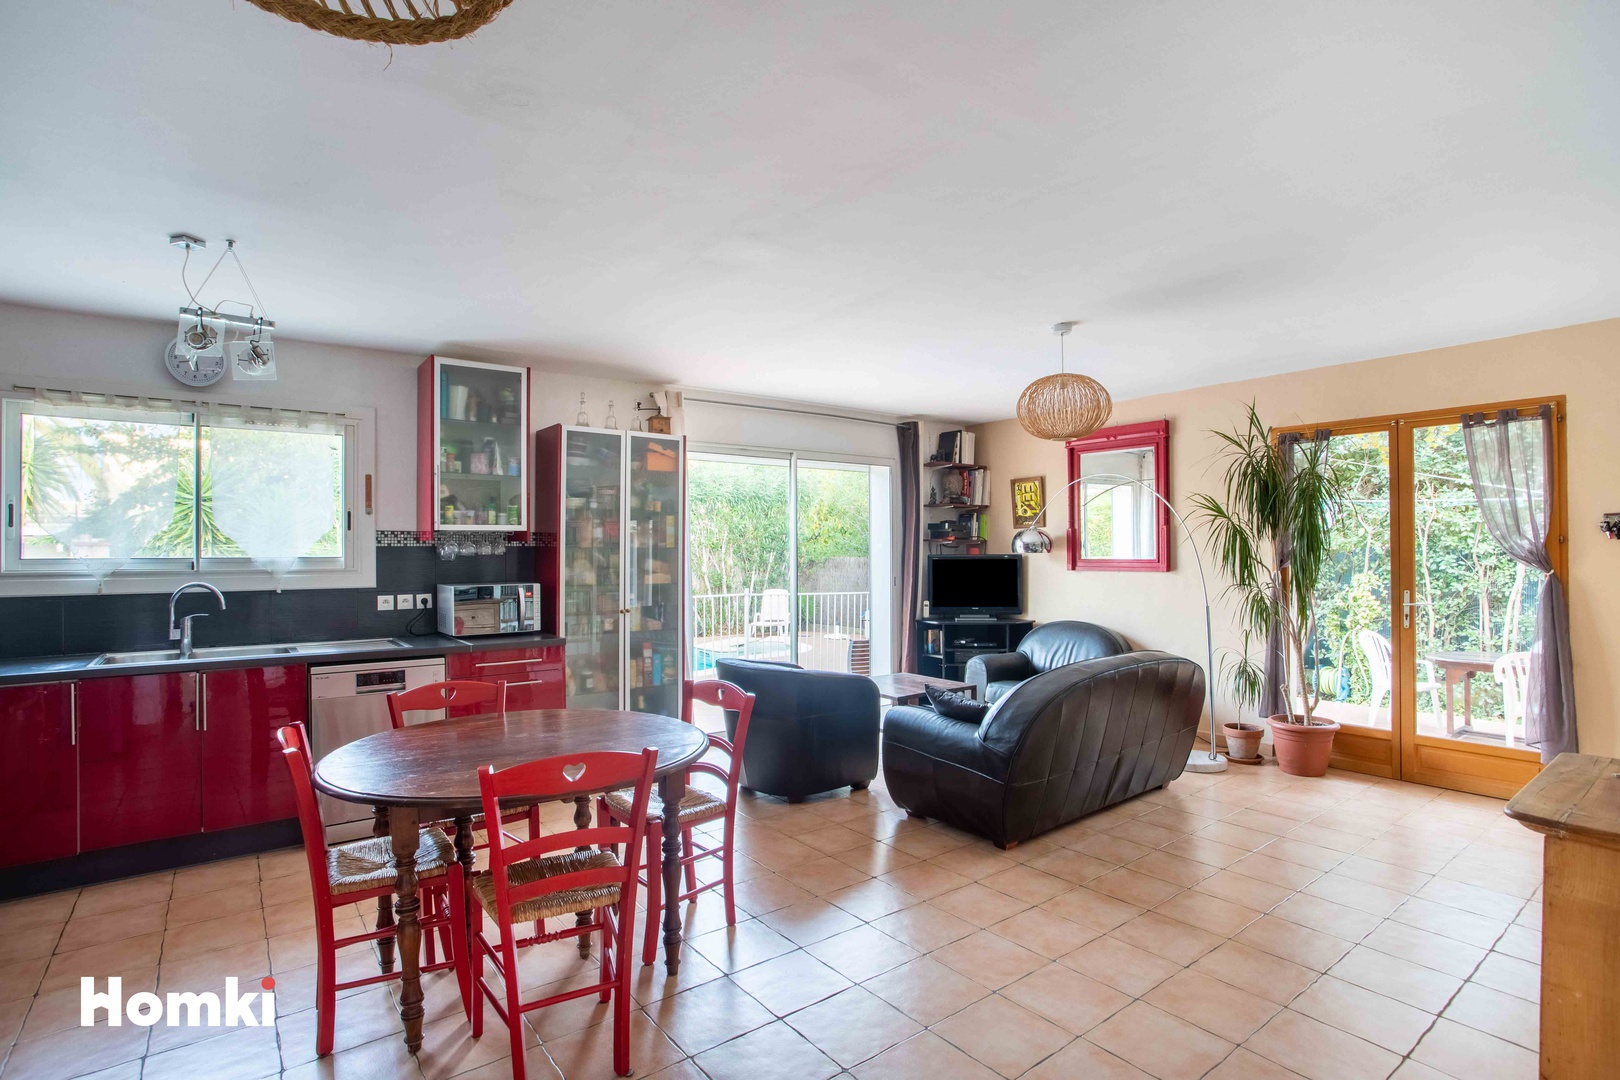 Homki - Vente Maison/villa  de 101.0 m² à La Seyne-sur-Mer 83500